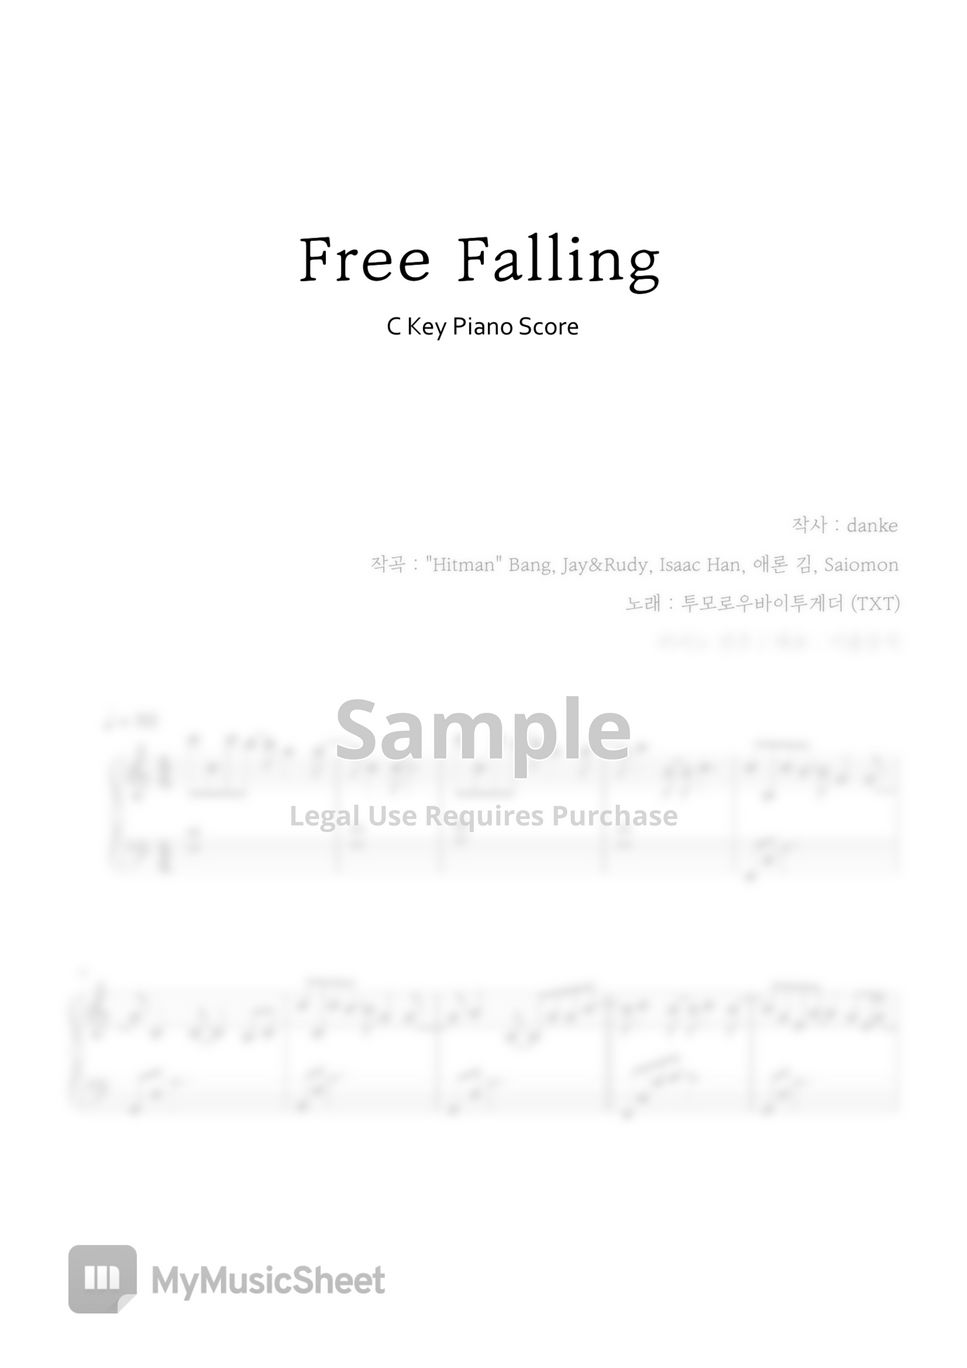 투모로우바이투게더 (TXT) - Free Falling (Easy key) by IRUM MUSIC